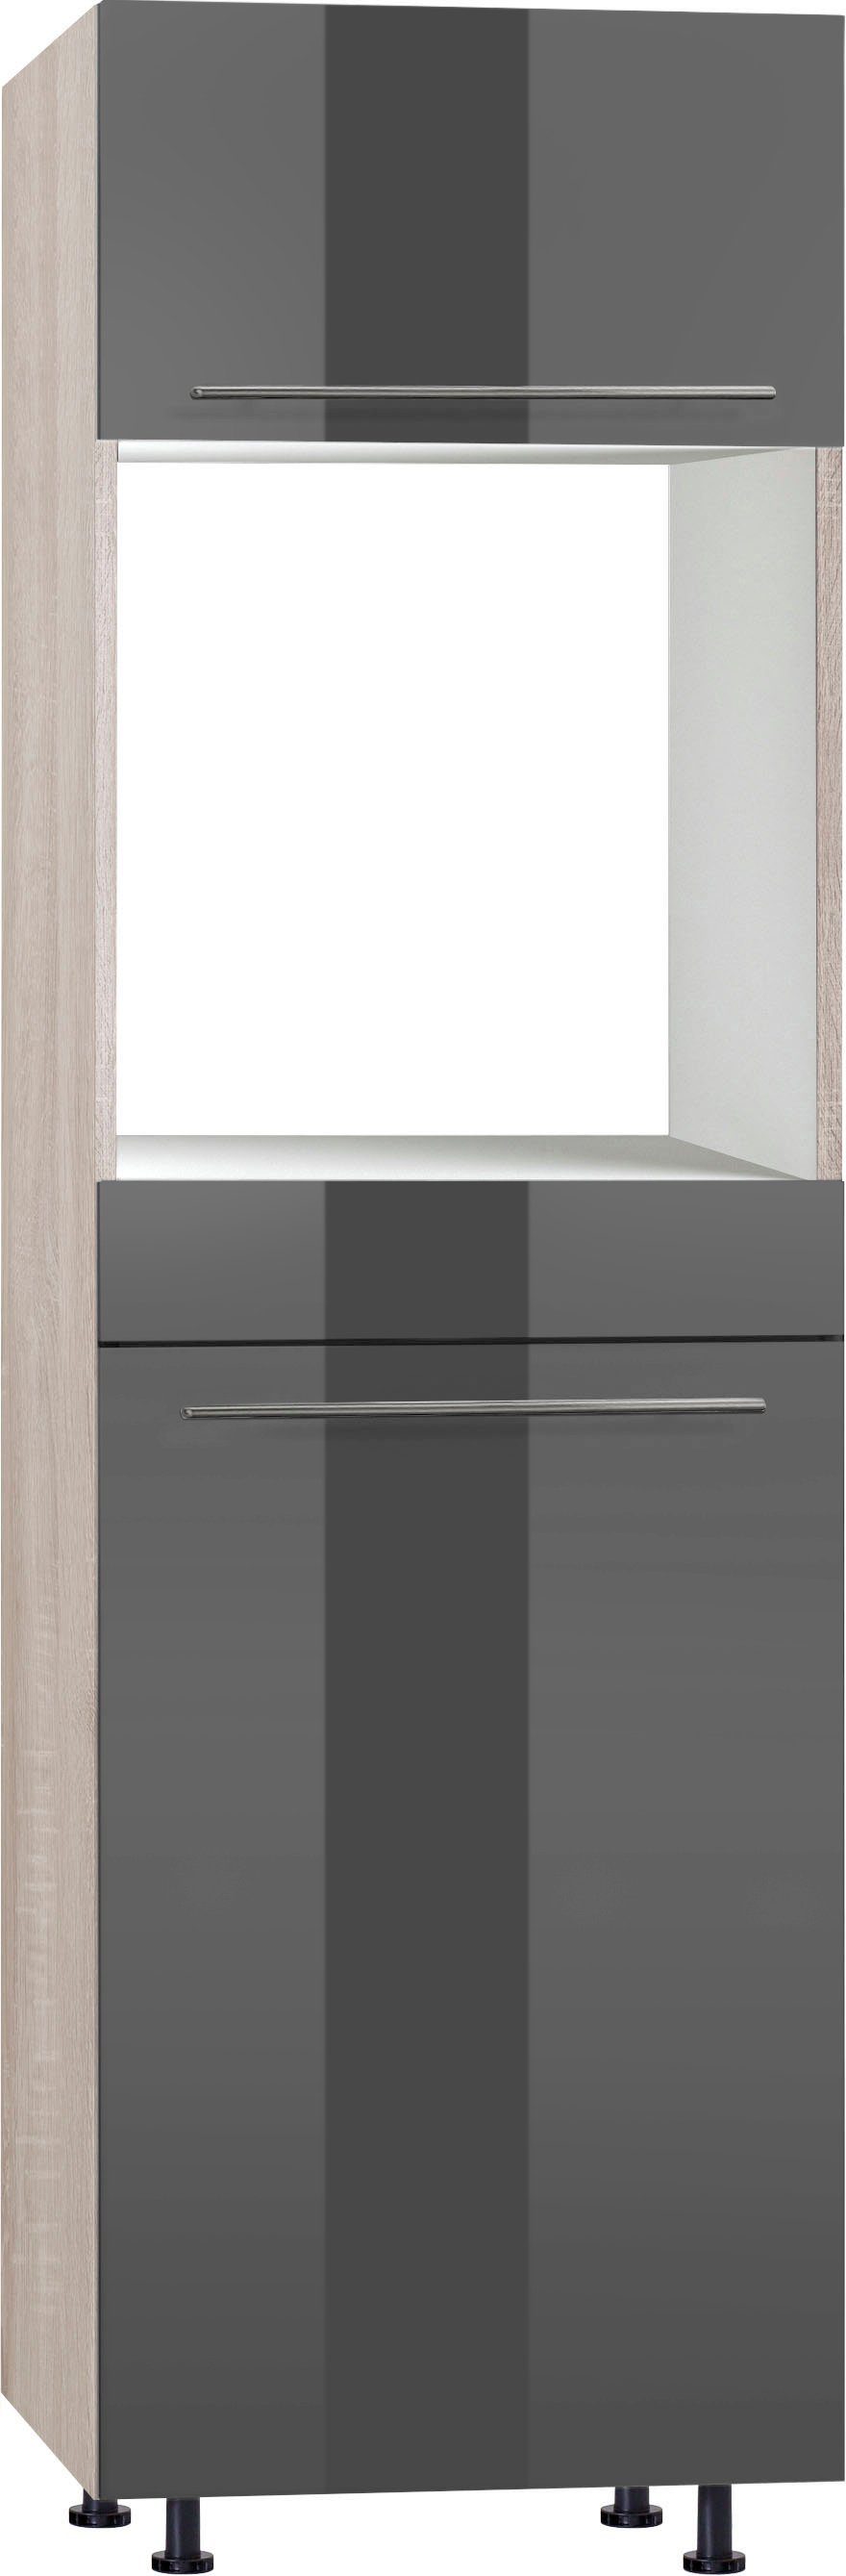 OPTIFIT Backofen/Kühlumbauschrank Bern 60 cm breit, 212 cm hoch, mit höhenverstellbaren Stellfüßen grau Hochglanz/akaziefarben | akaziefarben